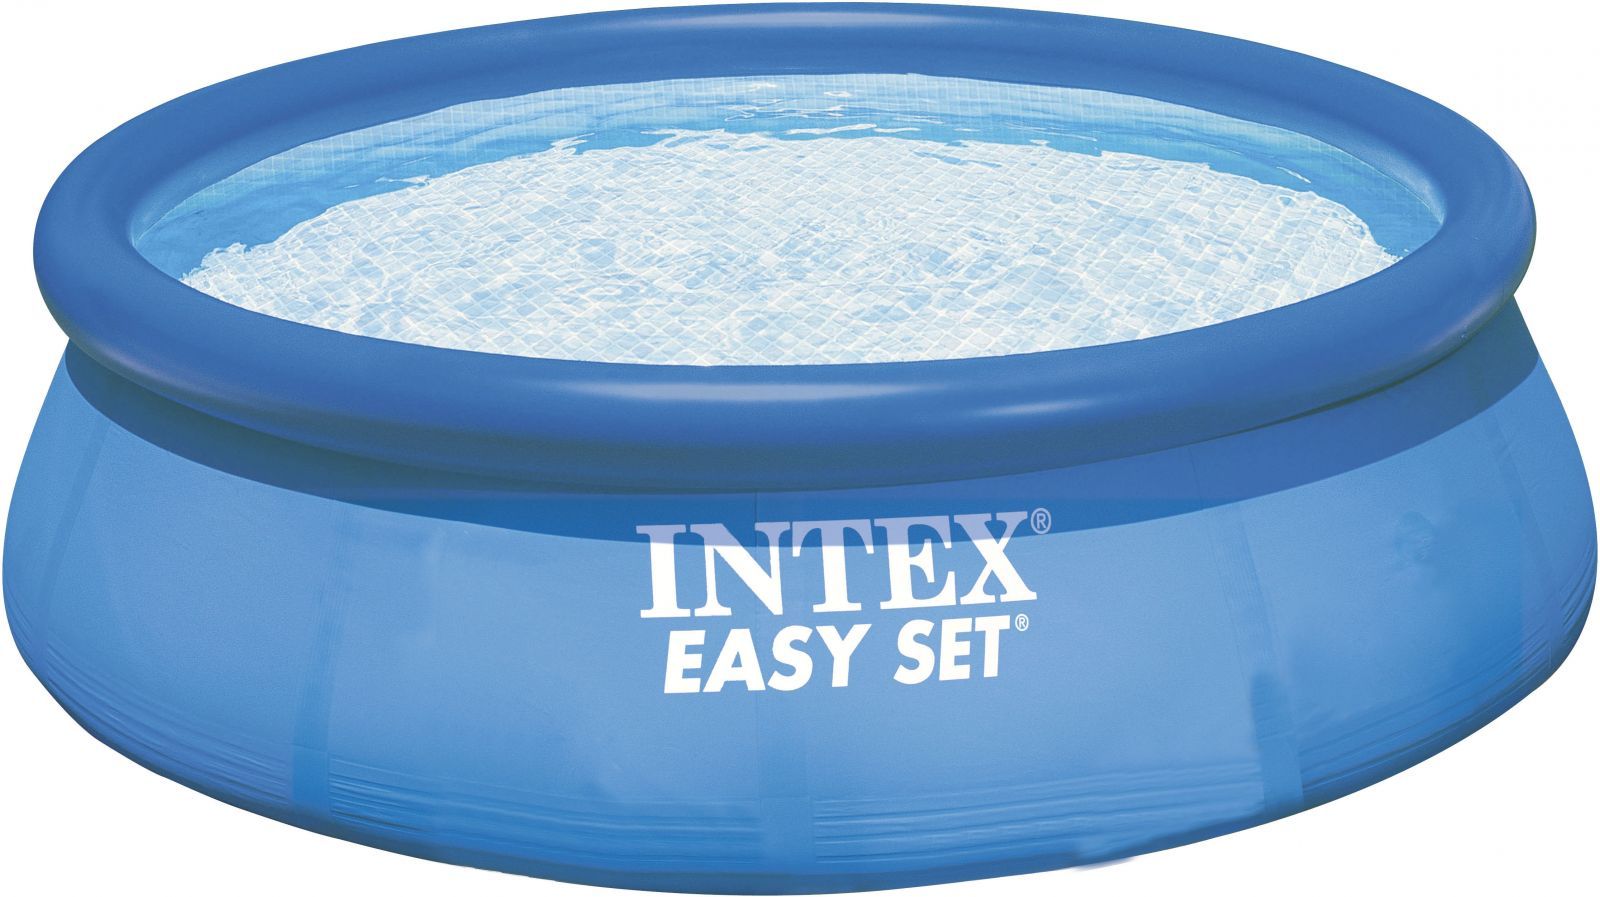 Intex Bazén Easy Set 396 x 84 cm - 28143